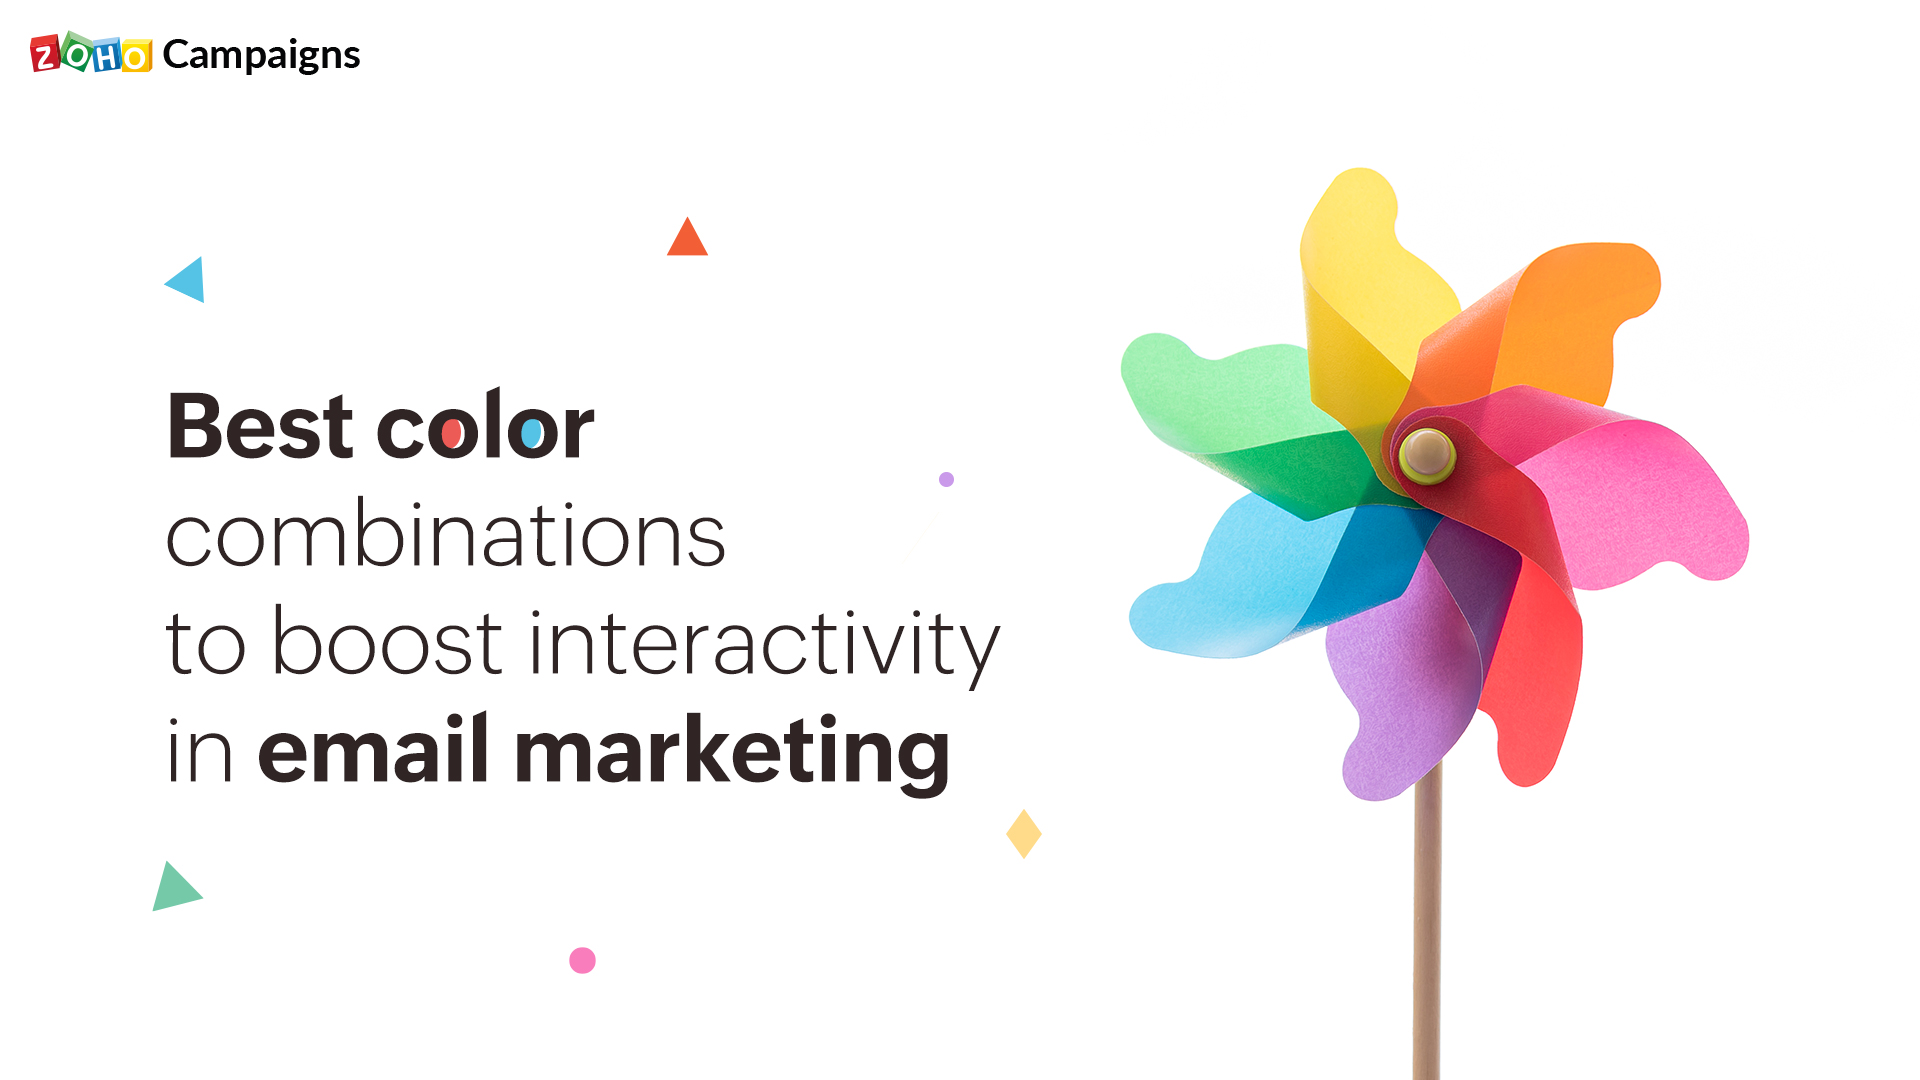 Use el color y aumente la interacción de su email marketing